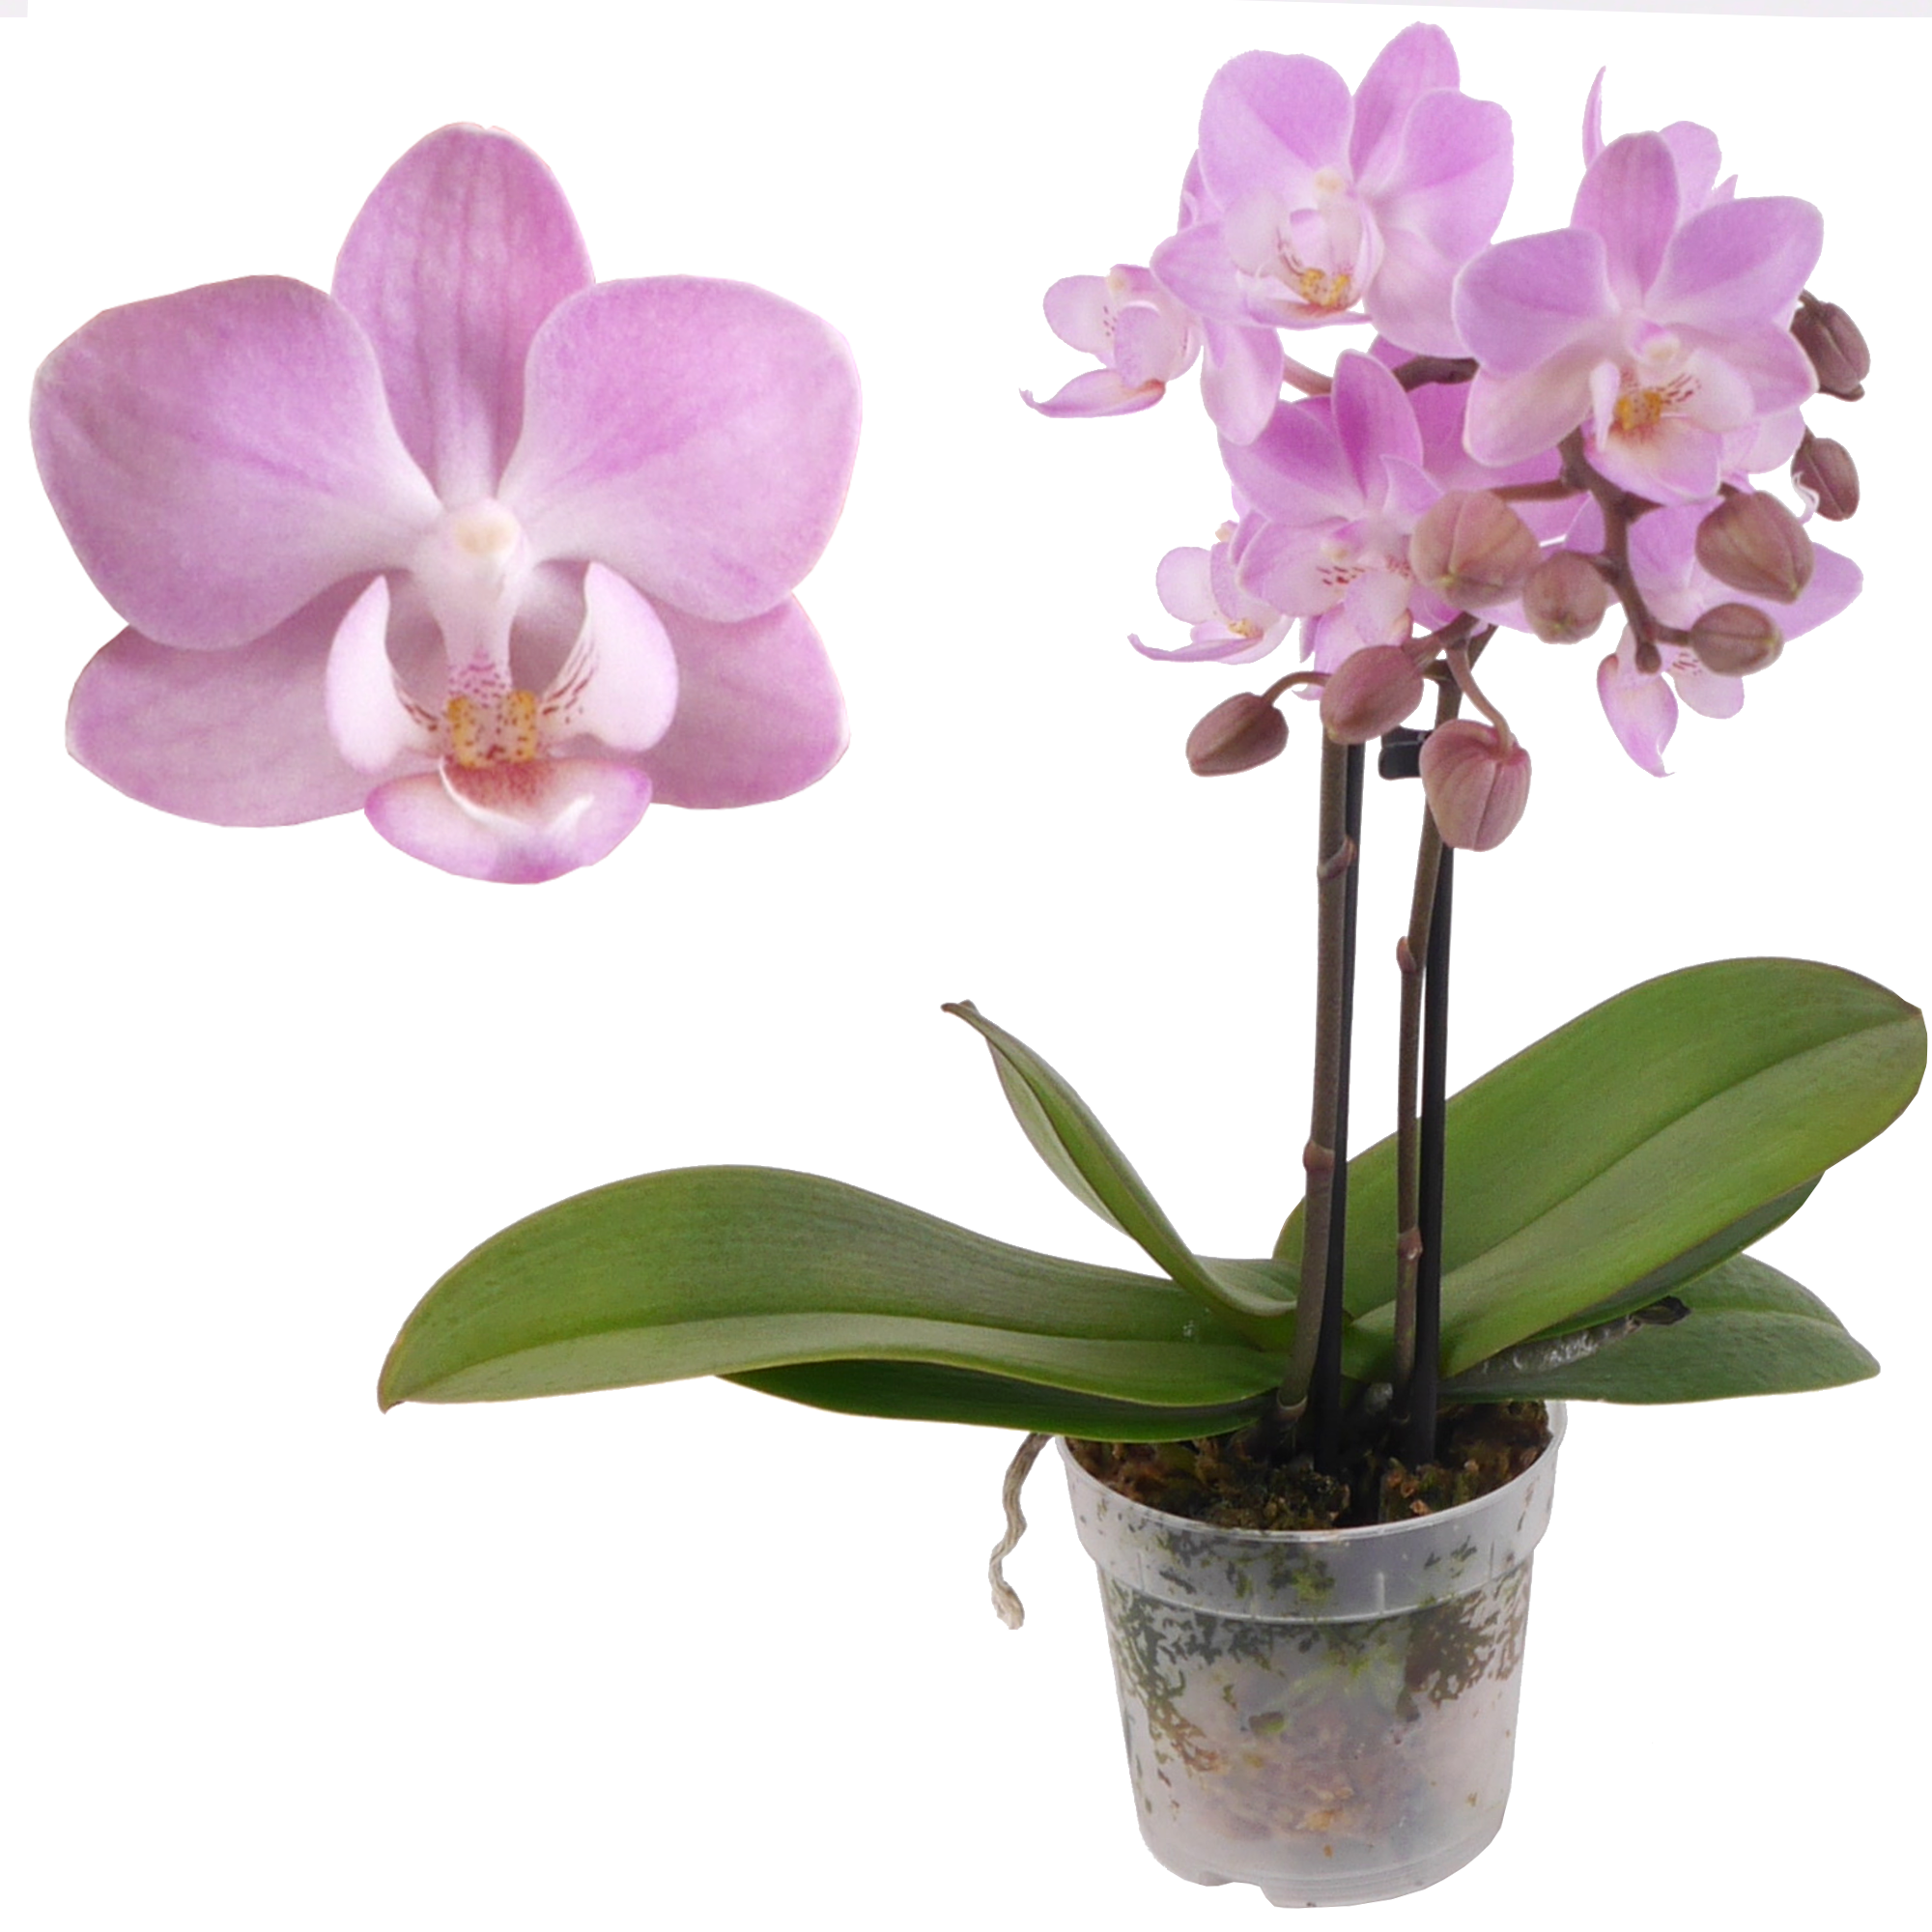 Schmetterlingsorchidee 'Lieke' 2 Rispen rosa, 7 cm Topf + product picture